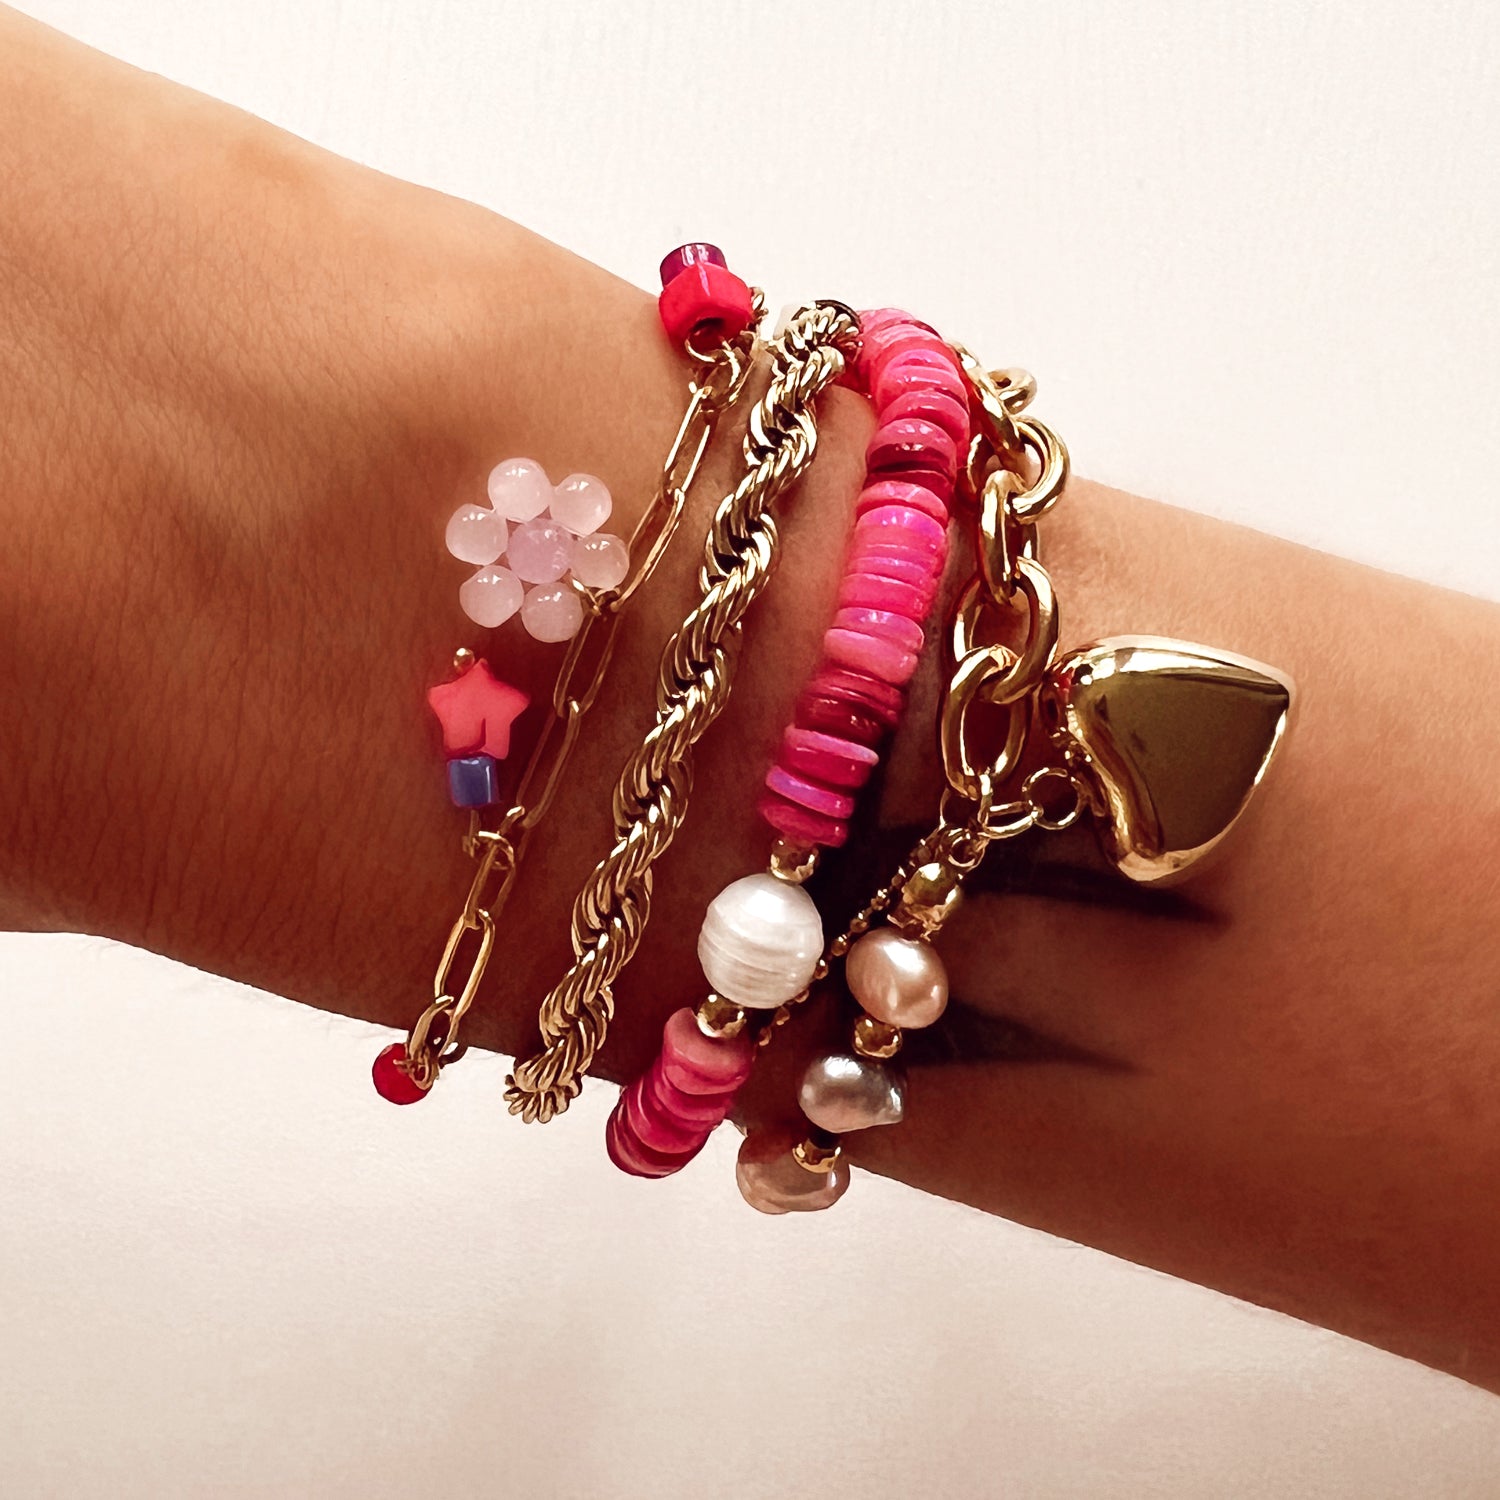 Gouden chain armband met fuchsia roze kralen en bloemetje. De armband is van roestvrij staal met een gold plated laagje en is waterproof.   Afmetingen 16 + 3 cm 